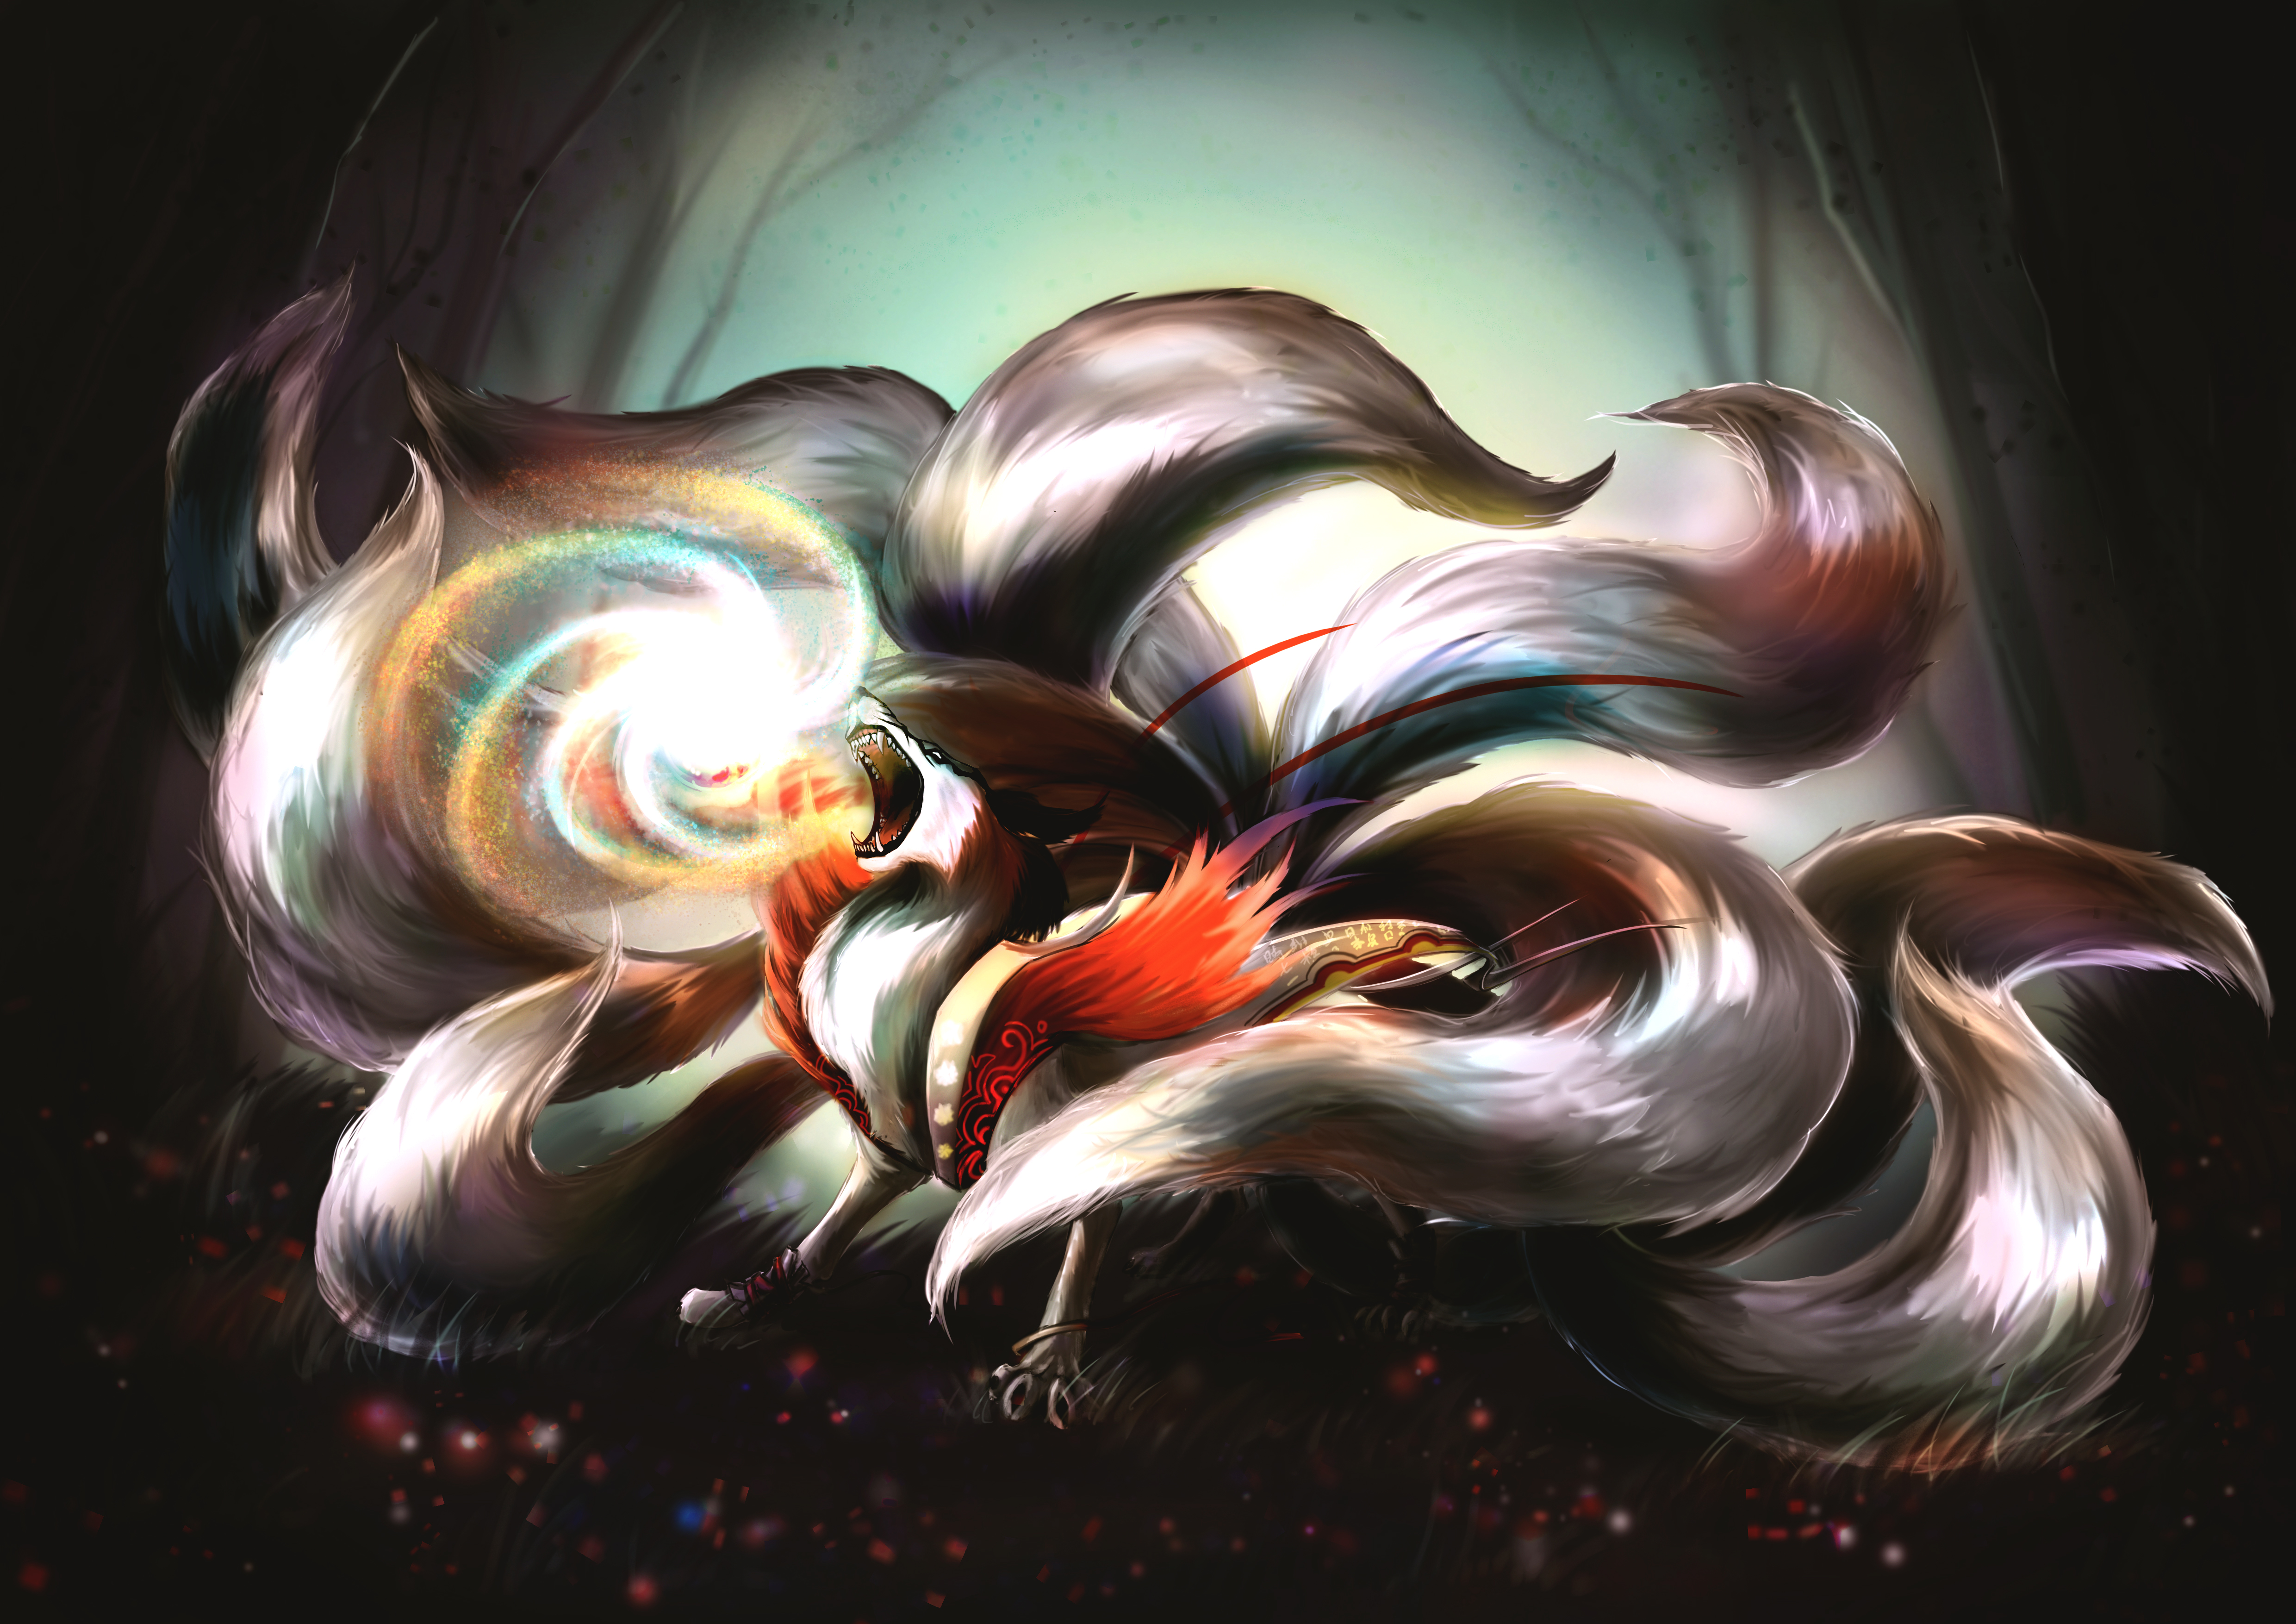 kitsune wallpaper,fractal art,art,illustration,water bird,graphic design